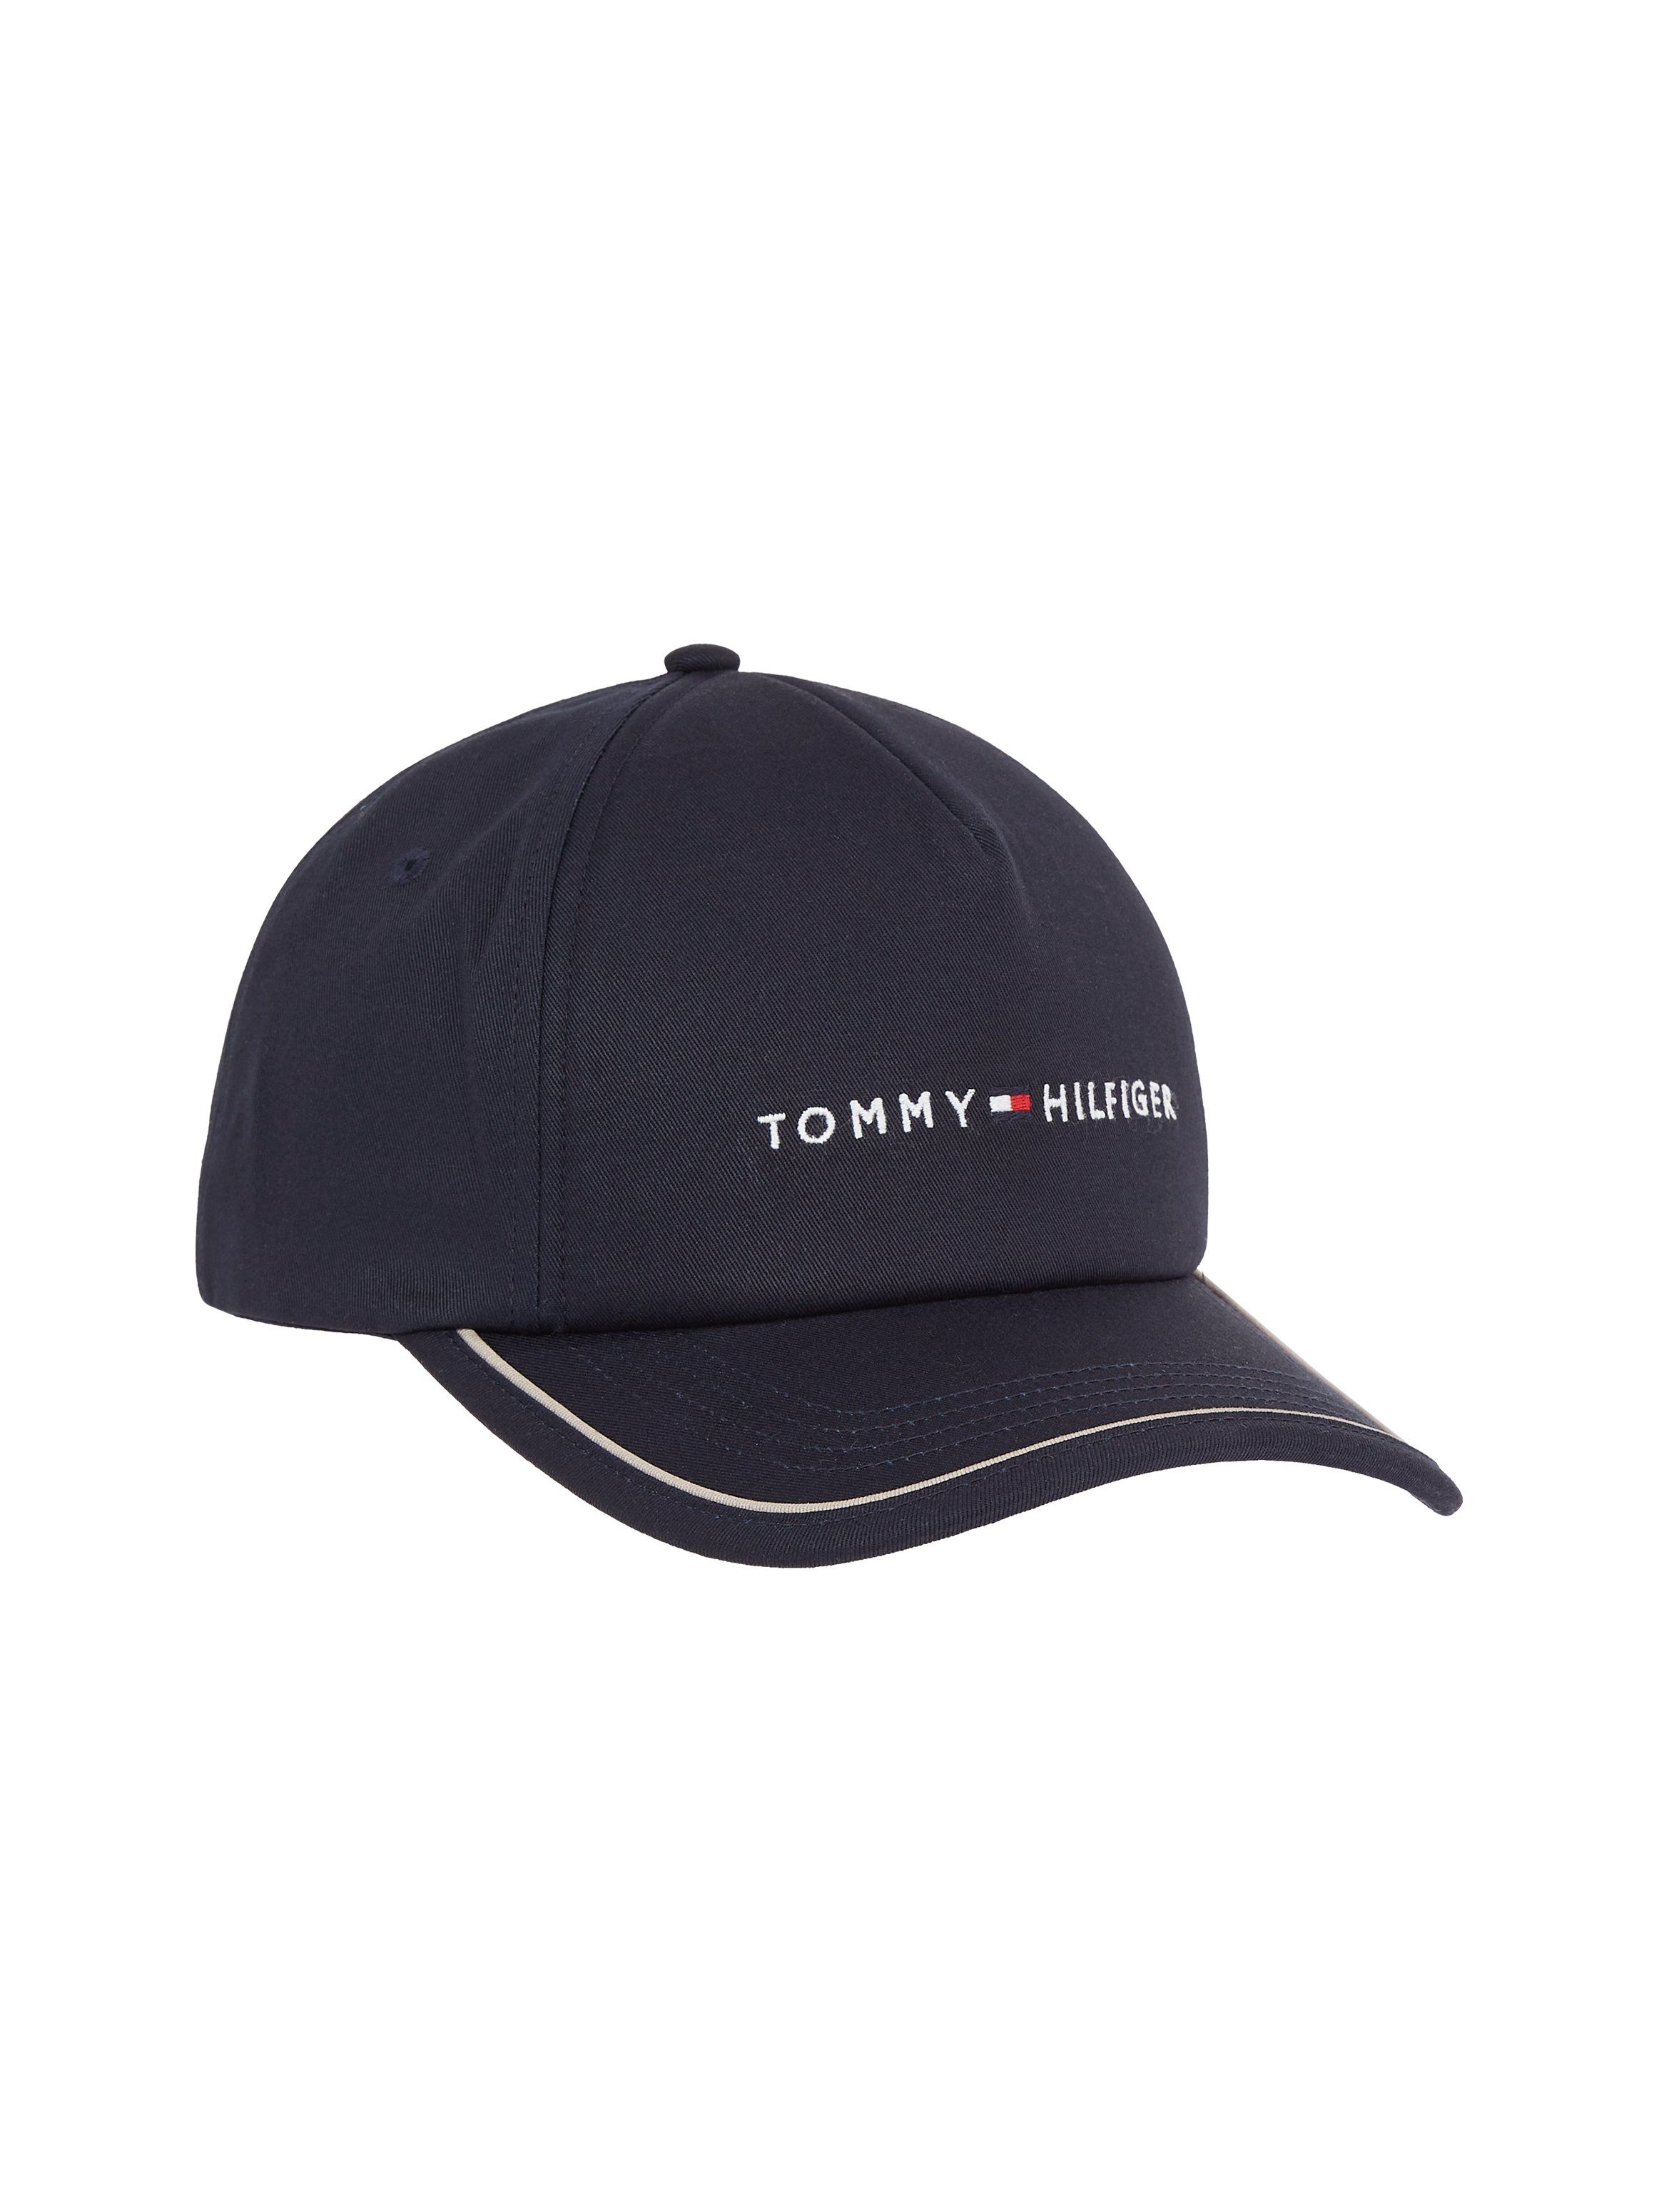 Tommy für Hilfiger » Kappen Tommy Caps Herren kaufen Hilfiger